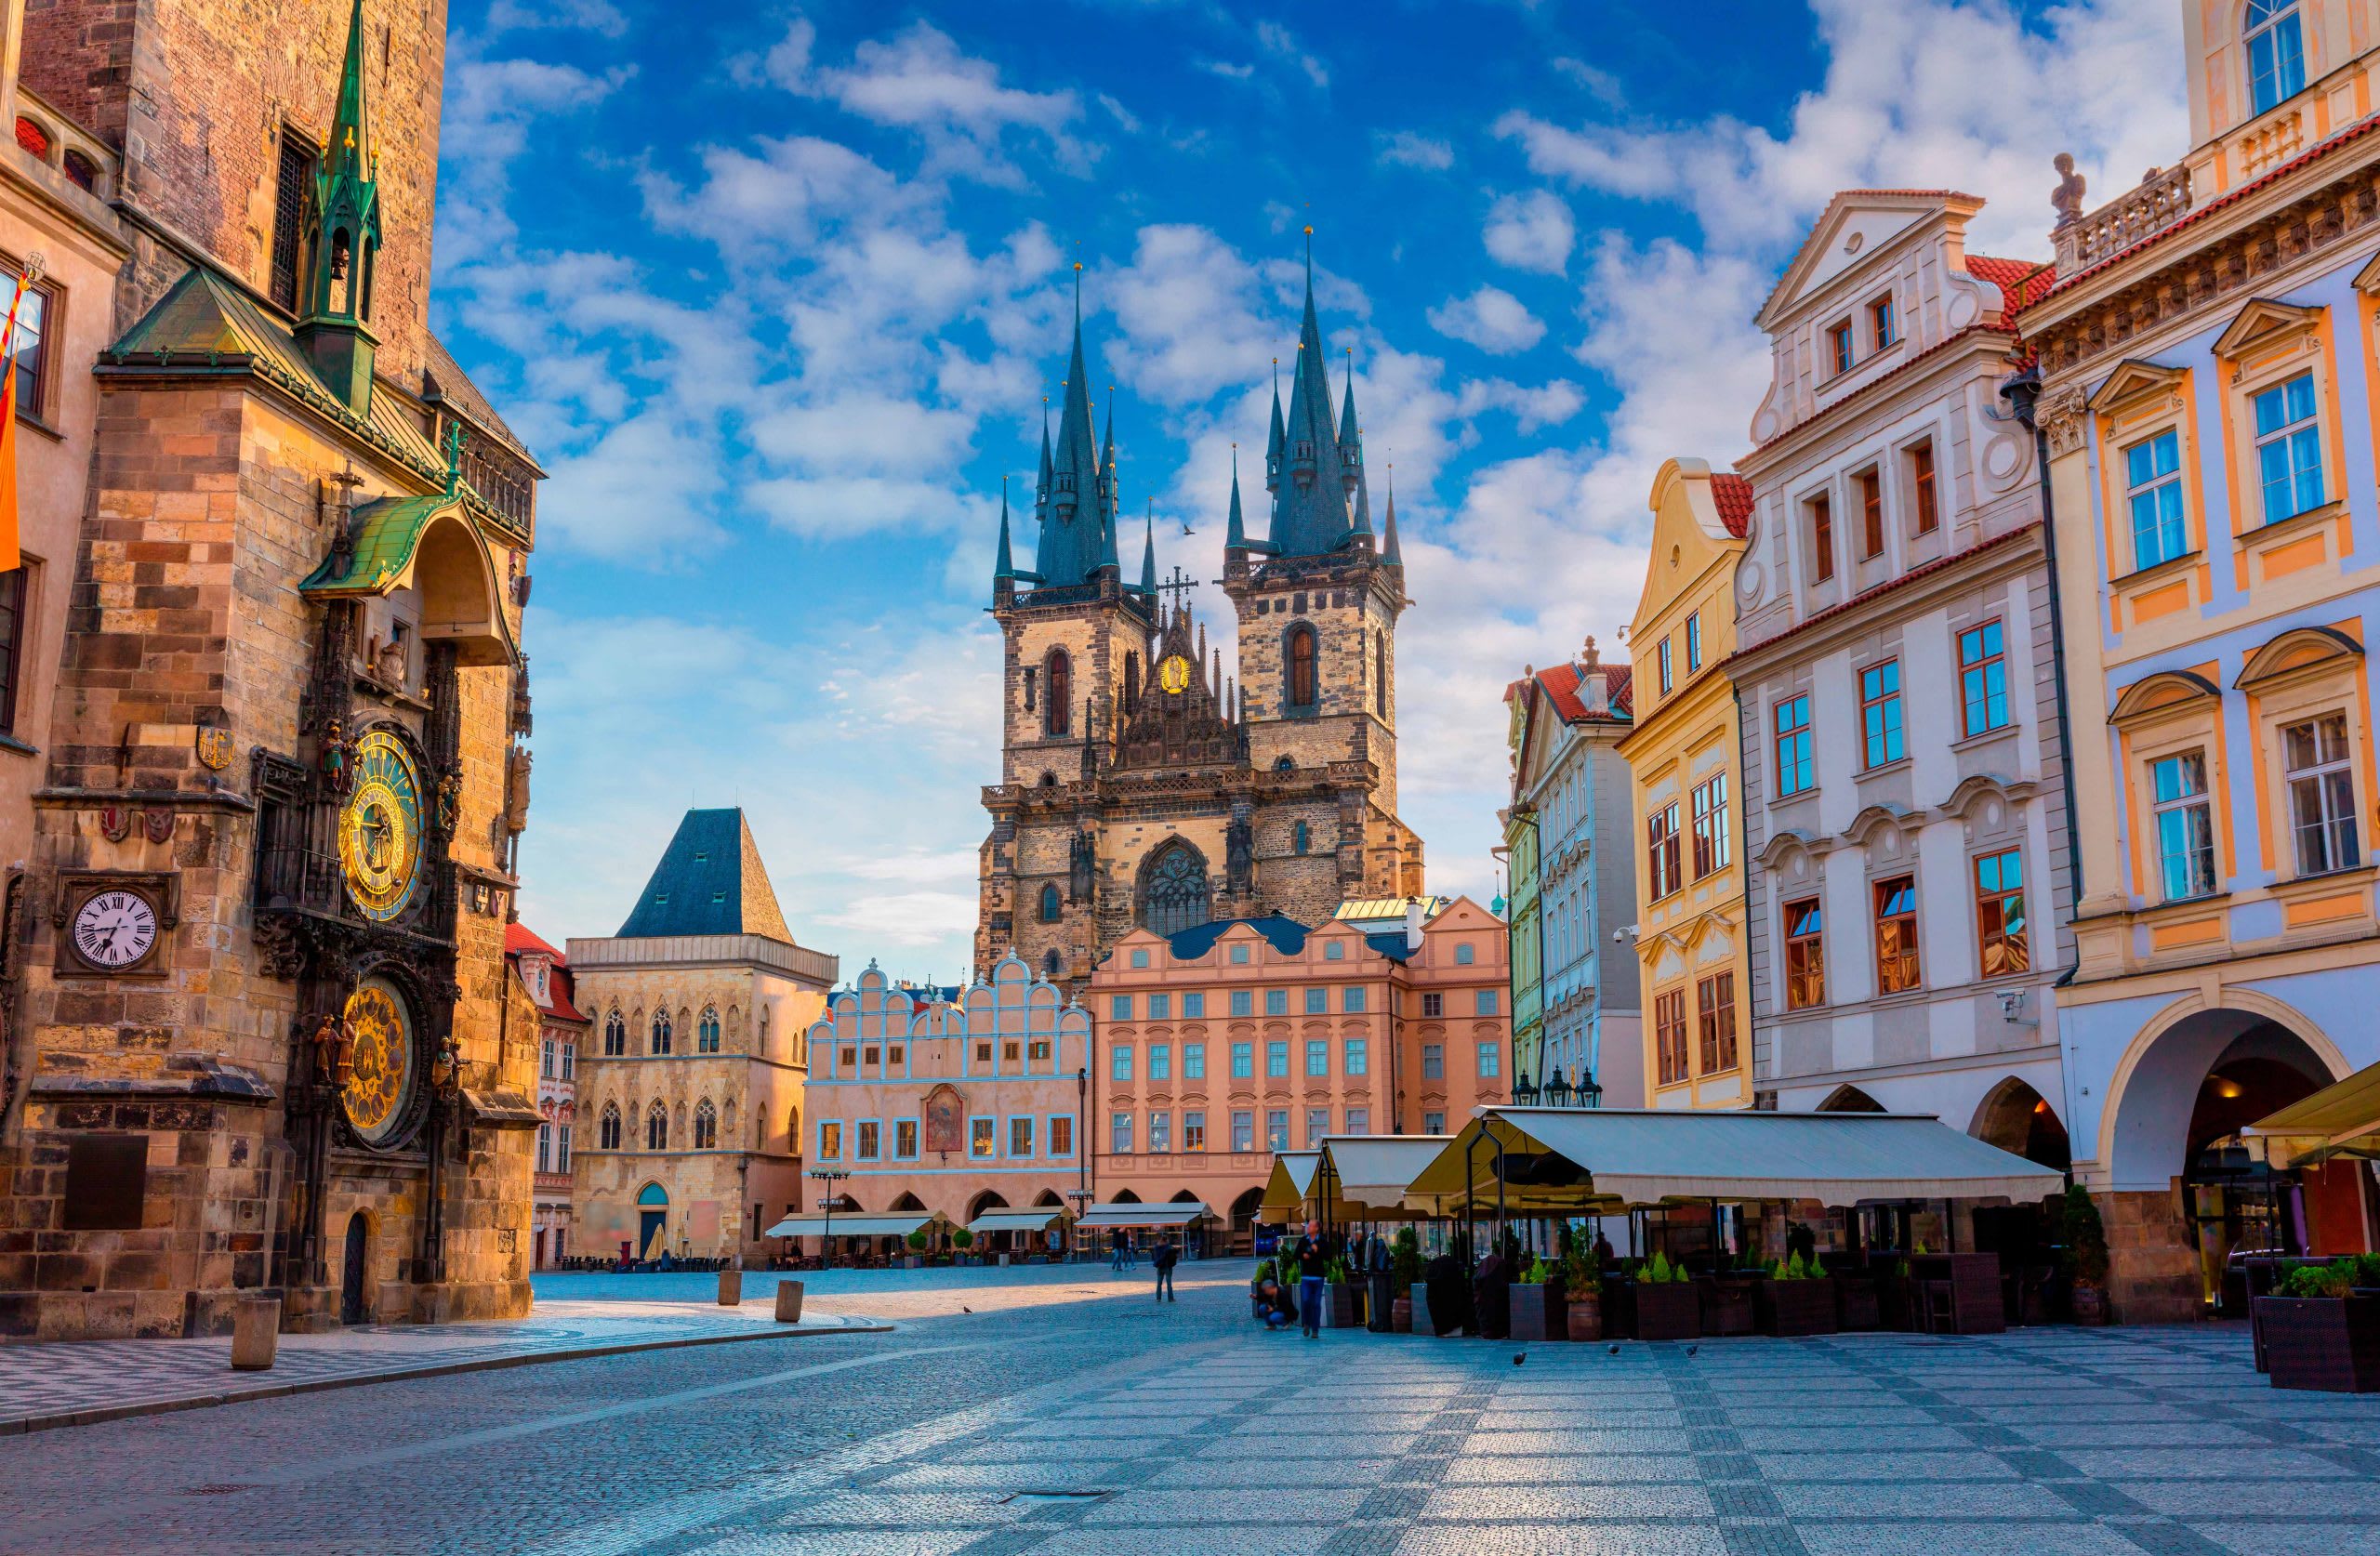 Староміська площа - старовинна площа Праги, розташована в історичному центрі міста. Джерело: shutterstock